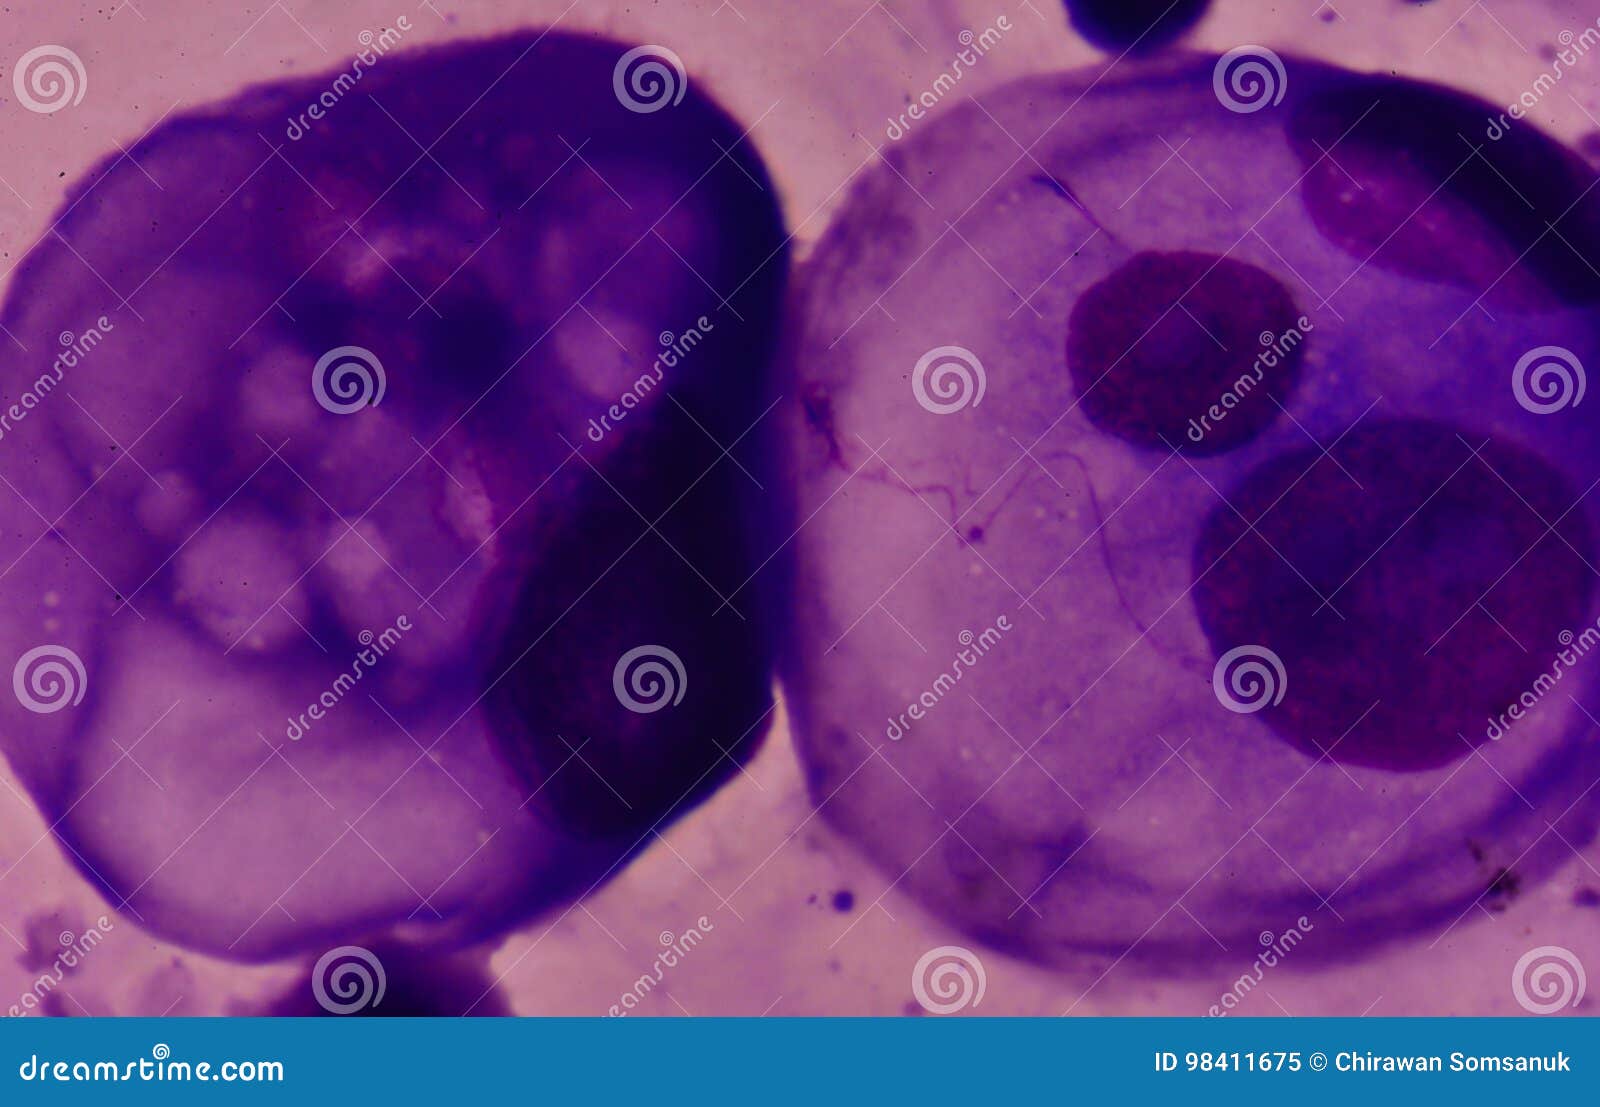 uterine papillary mesothelioma